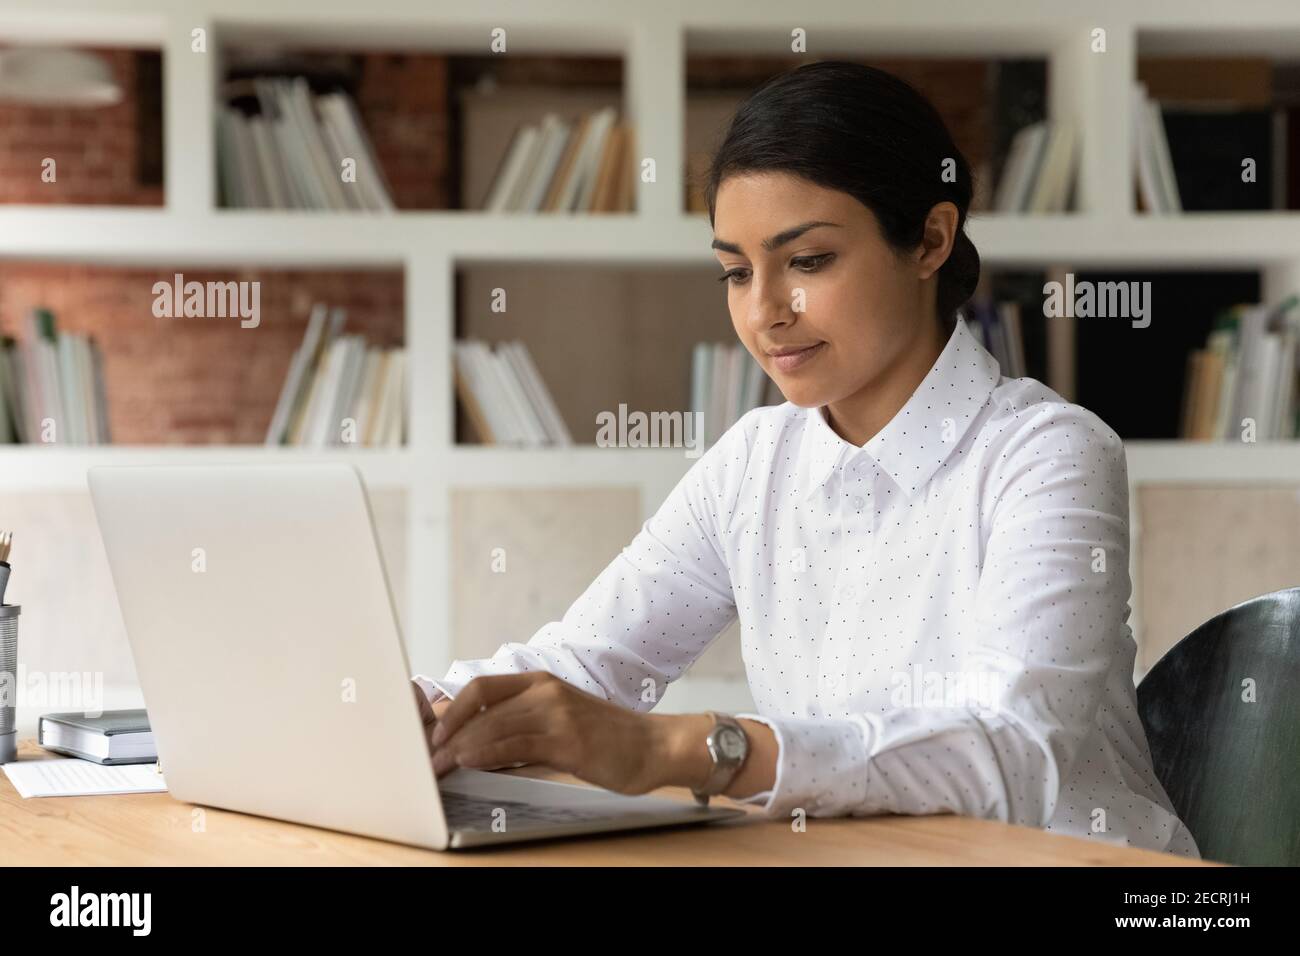 Une jeune femme indienne travaille sur un ordinateur portable Banque D'Images